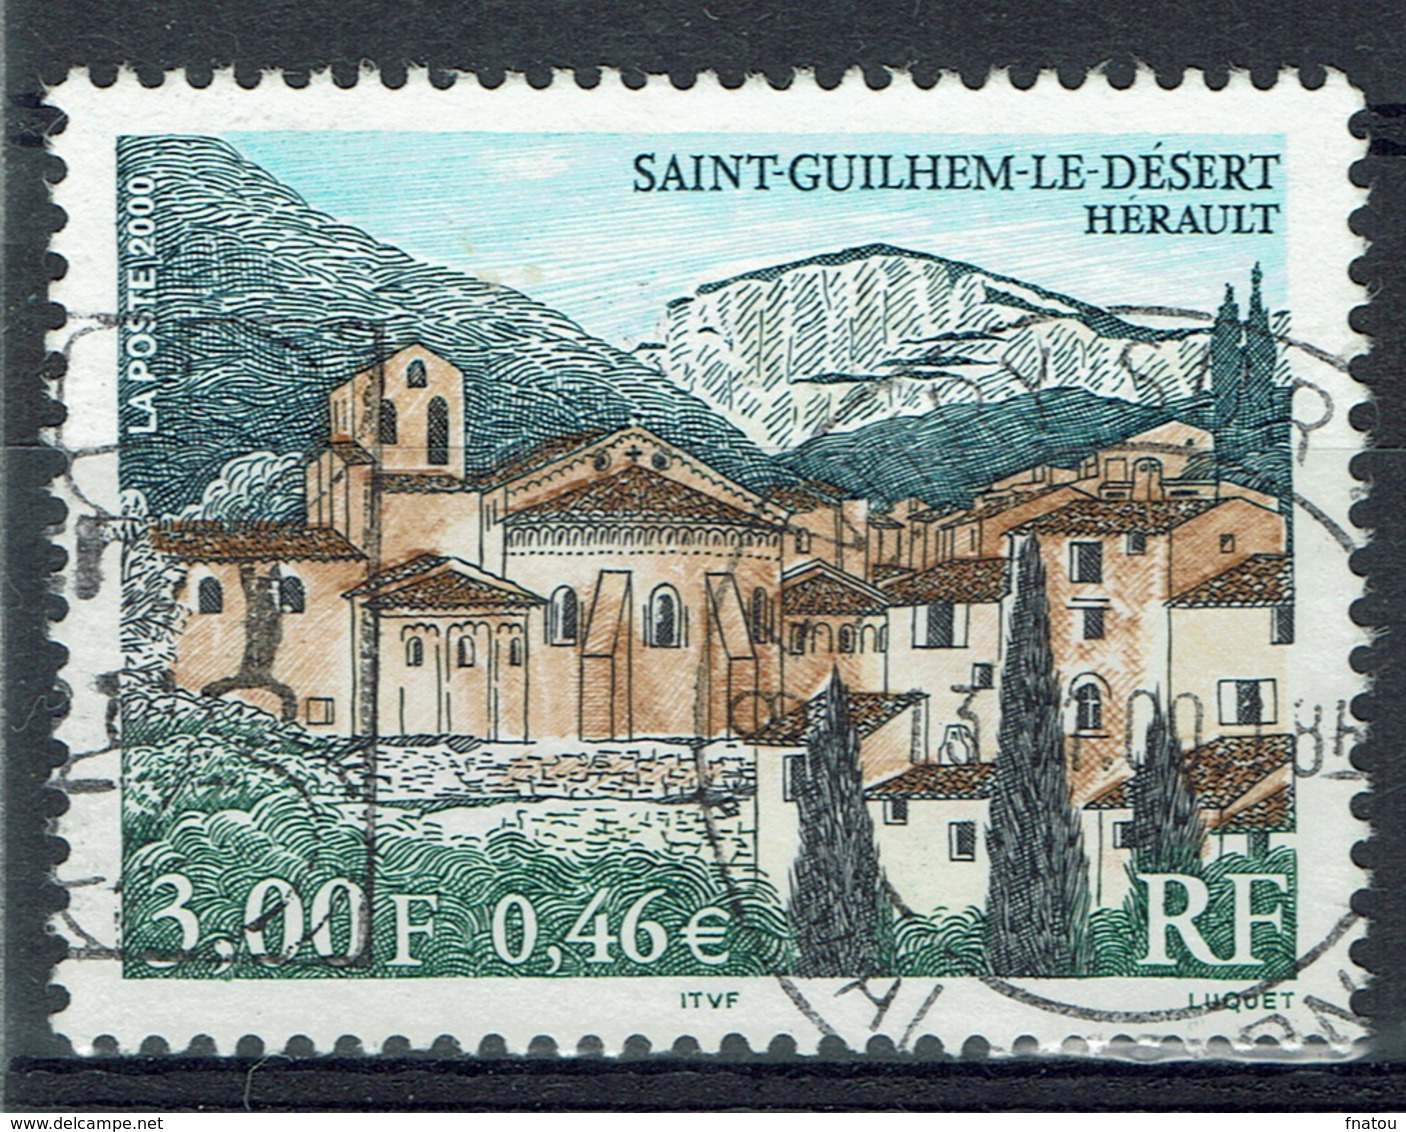 France, Saint-Guilhem-le-Désert, Occitanie Region, 2000, VFU - Used Stamps